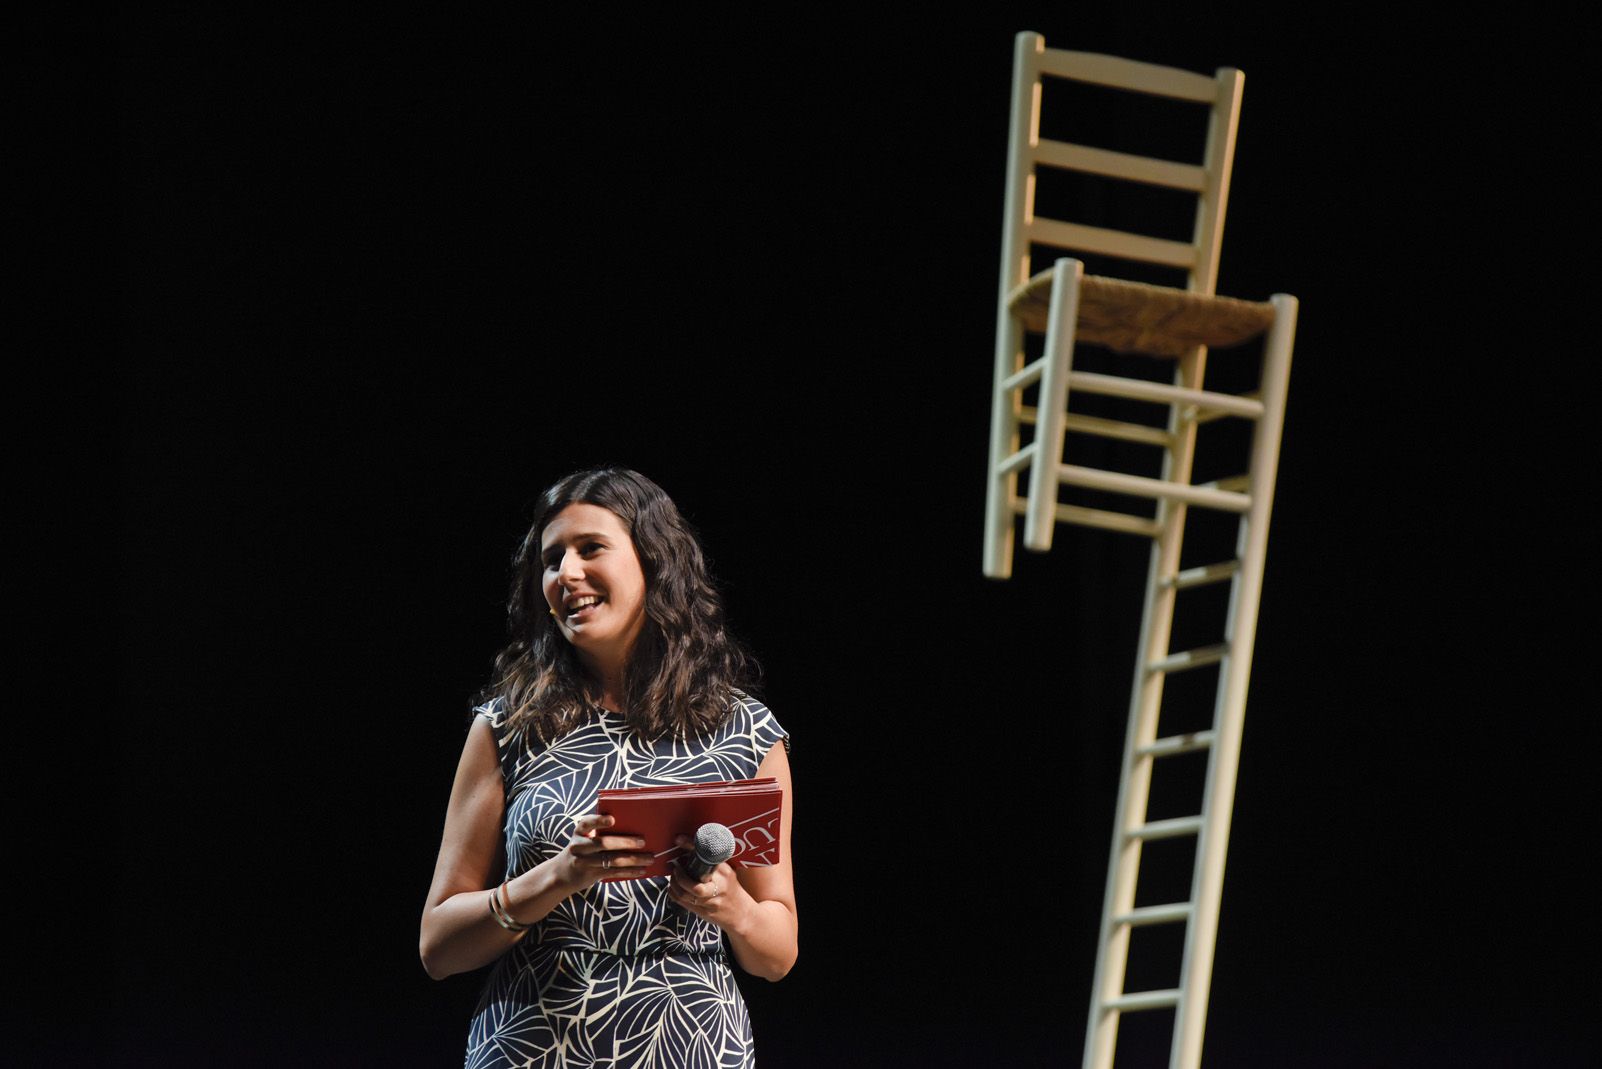 Presentació de la temporada 2019-20 al Teatre-Auditori. Foto: Bernat Millet.